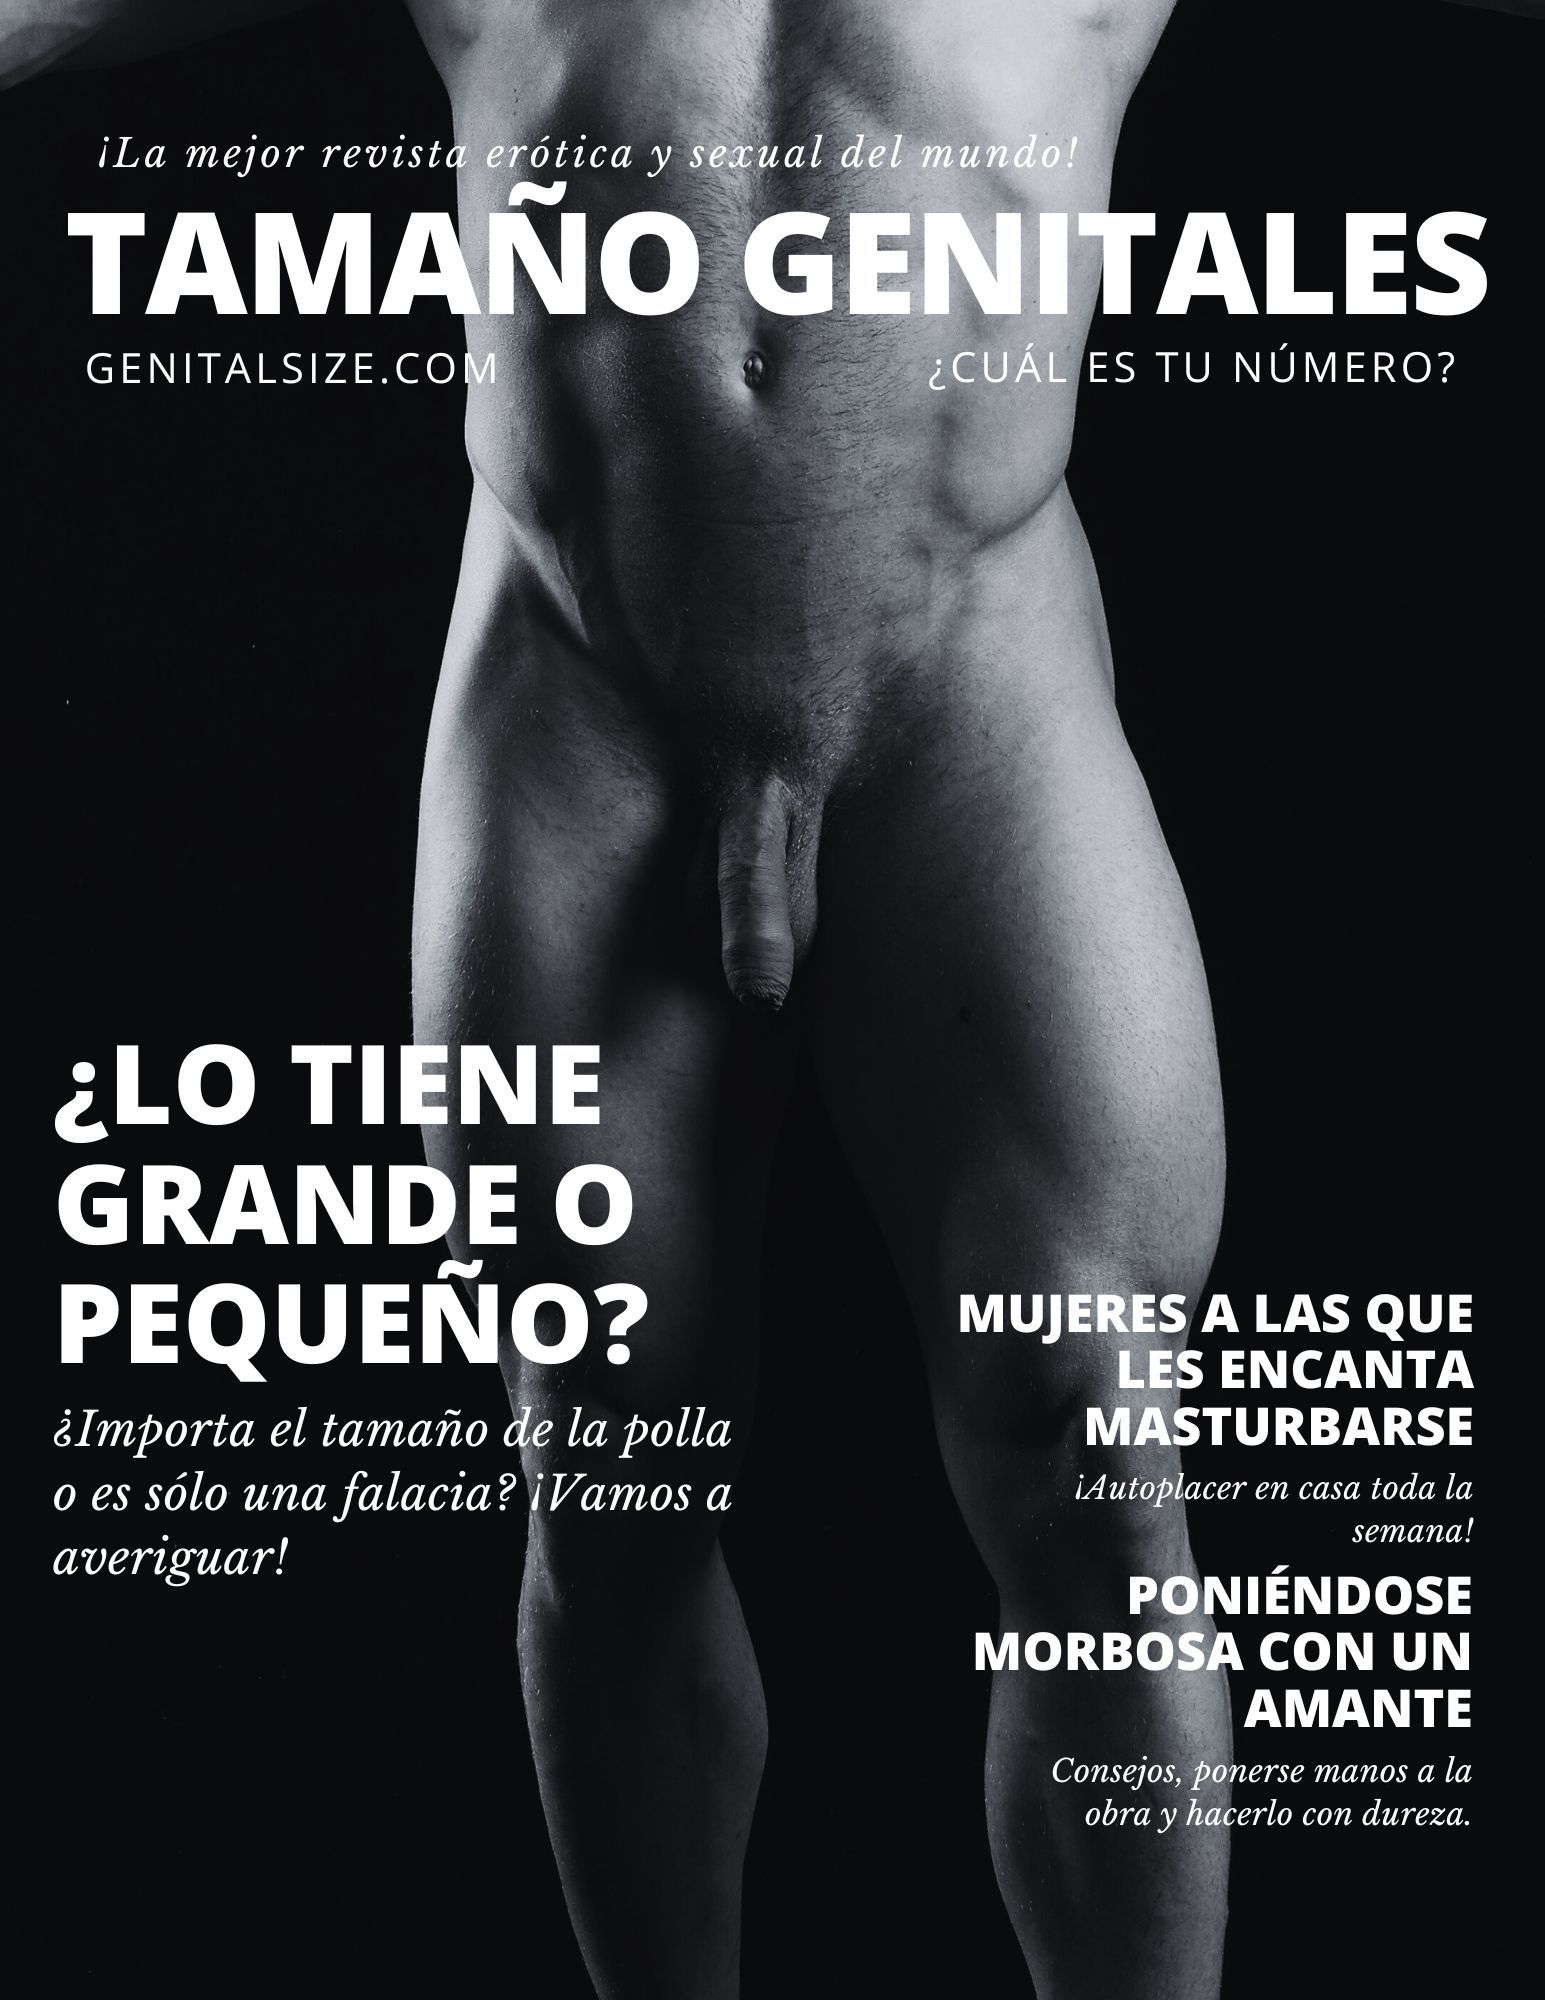 Portada de revista que muestra un torso masculino desnudo y pregunta: ¿cuánto mide su pene?